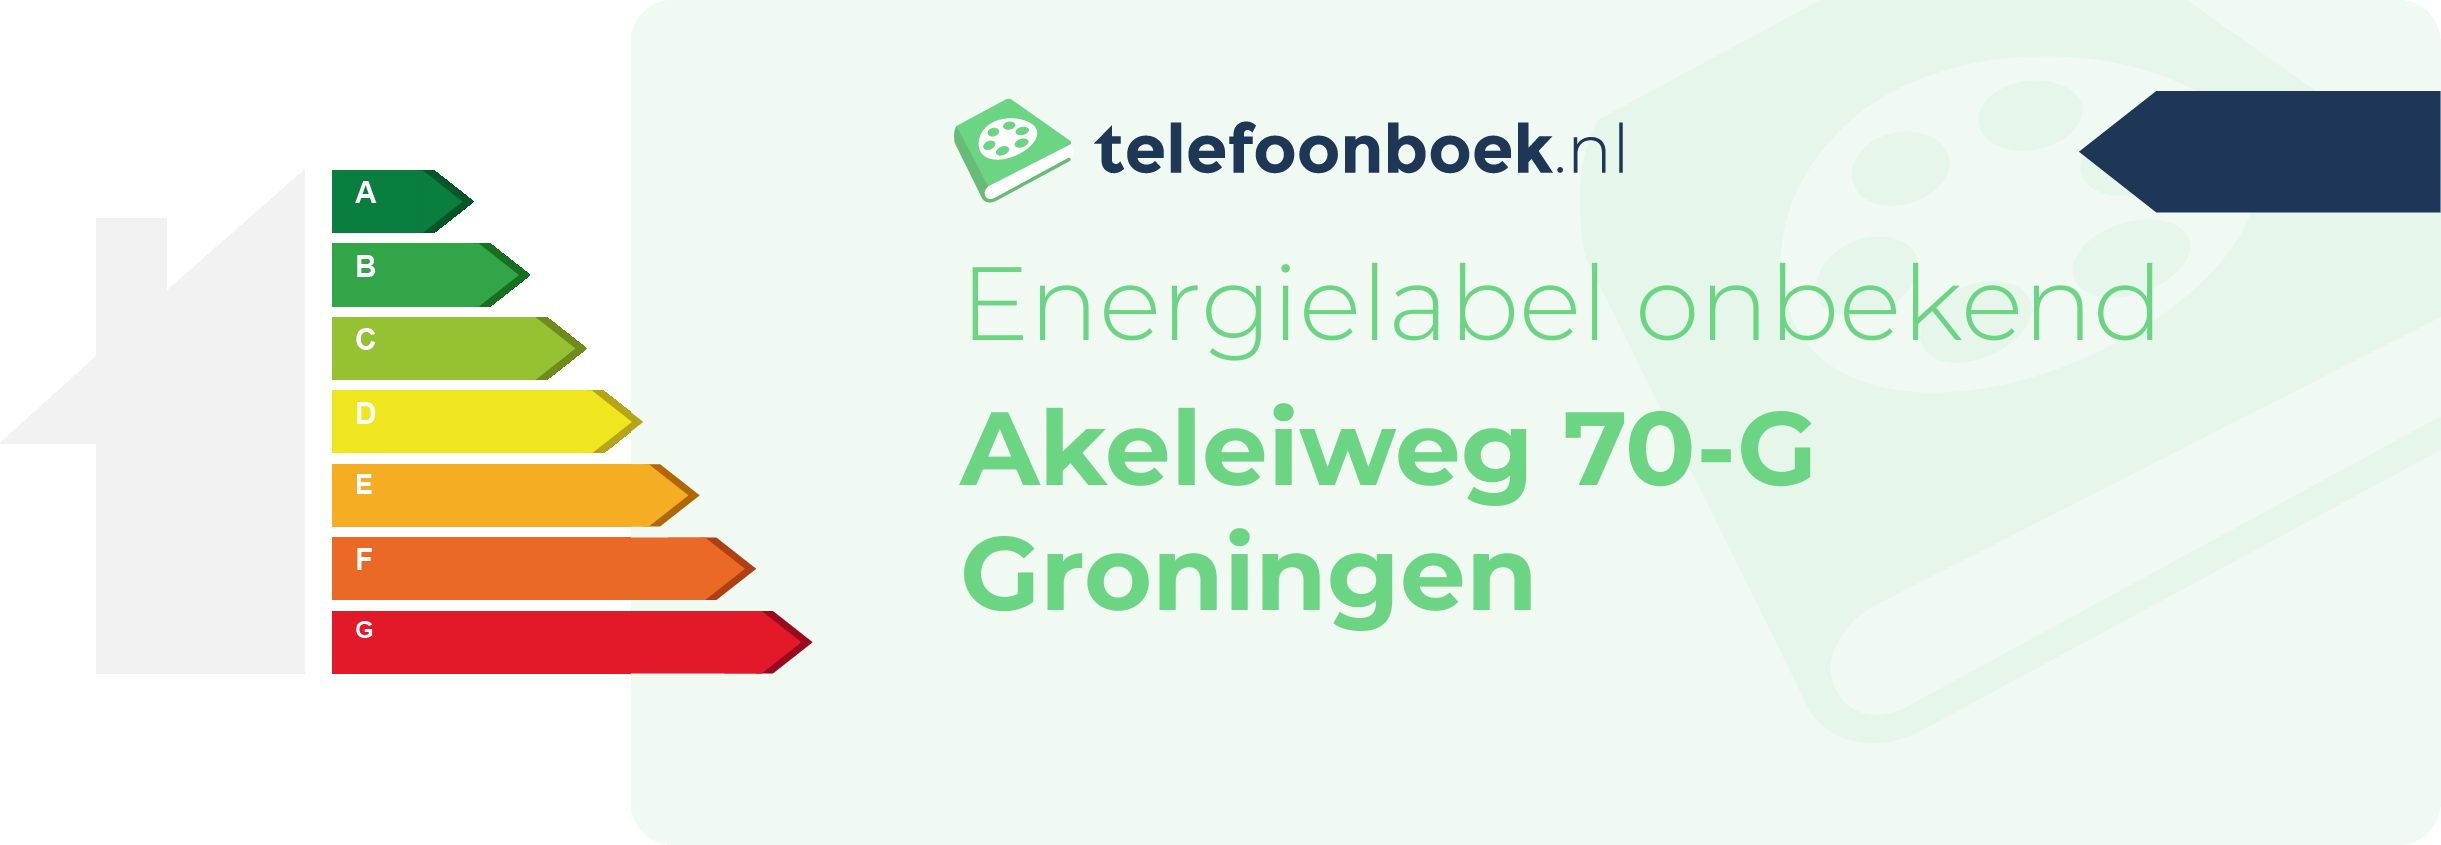 Energielabel Akeleiweg 70-G Groningen